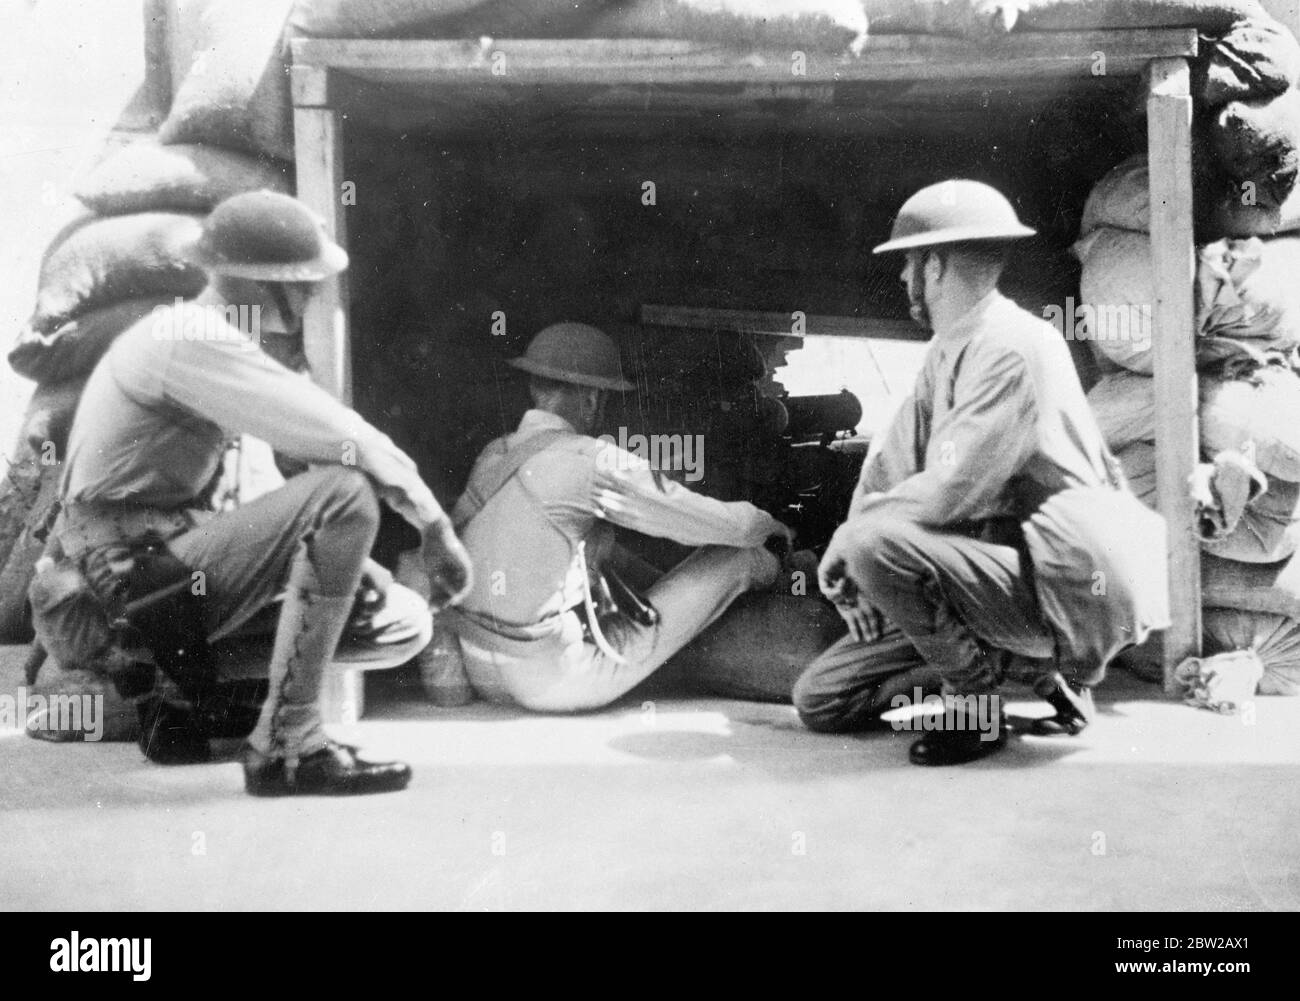 Maschinengewehrschützen halten Wache auf Schanghais internationaler Siedlung. Die Preise mit Japan drohen. Diese Bilder sind gerade aus Shanghai erhalten worden, wo eine ernste Situation durch die Aktion des japanischen Kommandanten, seine Kontrolle über die Zoll gebracht worden ist. Großbritannien, Amerika und Frankreich ergreifen konzertierte Maßnahmen zum Schutz der Interessen und haben Japan "gewarnt". Foto zeigt, amerikanische Marineinfanteristen auf der Hut, als sie einen Maschinengewehr-Pfosten in der internationalen Siedlung, Shanghai bemannen. 28. November 1937 Stockfoto